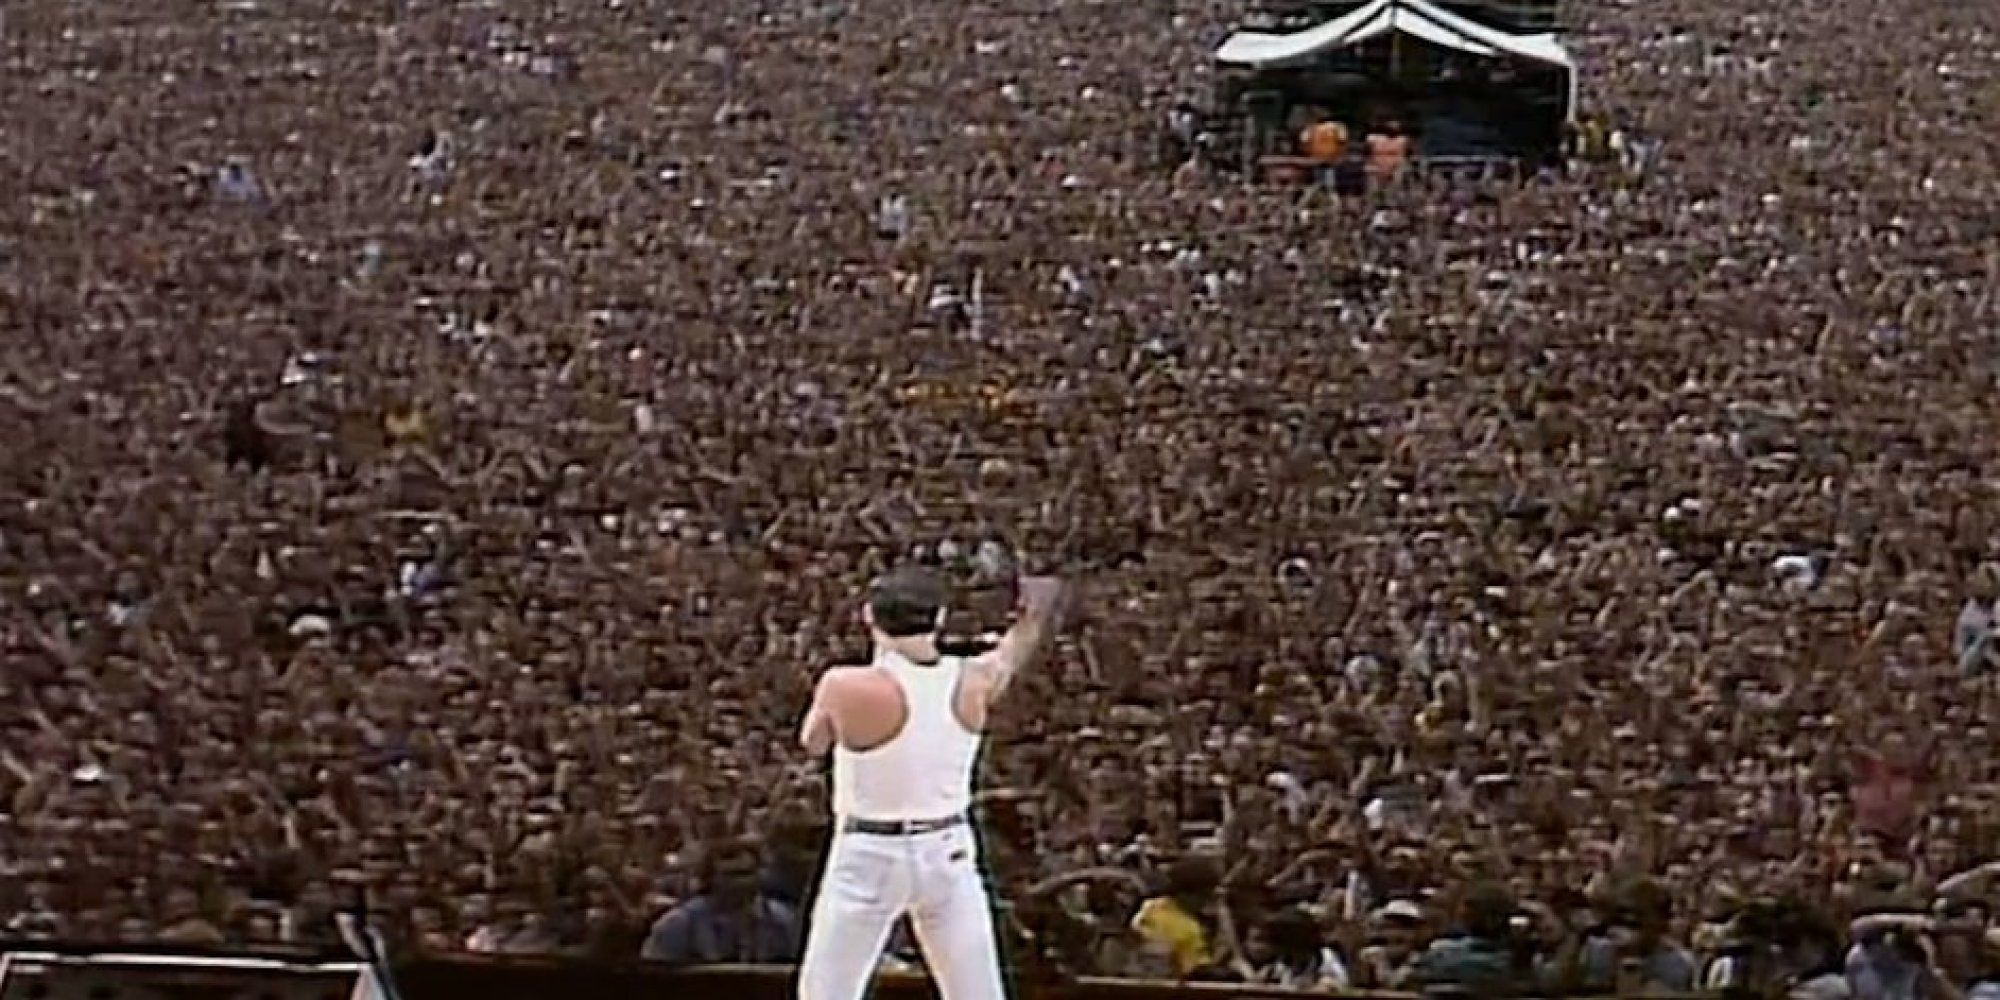 Концерт квин на стадионе. Фредди Меркьюри Уэмбли 1985. Фредди Меркьюри стадион Уэмбли 1986. Концерт Queen на Уэмбли 1986. Концерт Фредди Меркури на стадионе Уэмбли 1986.